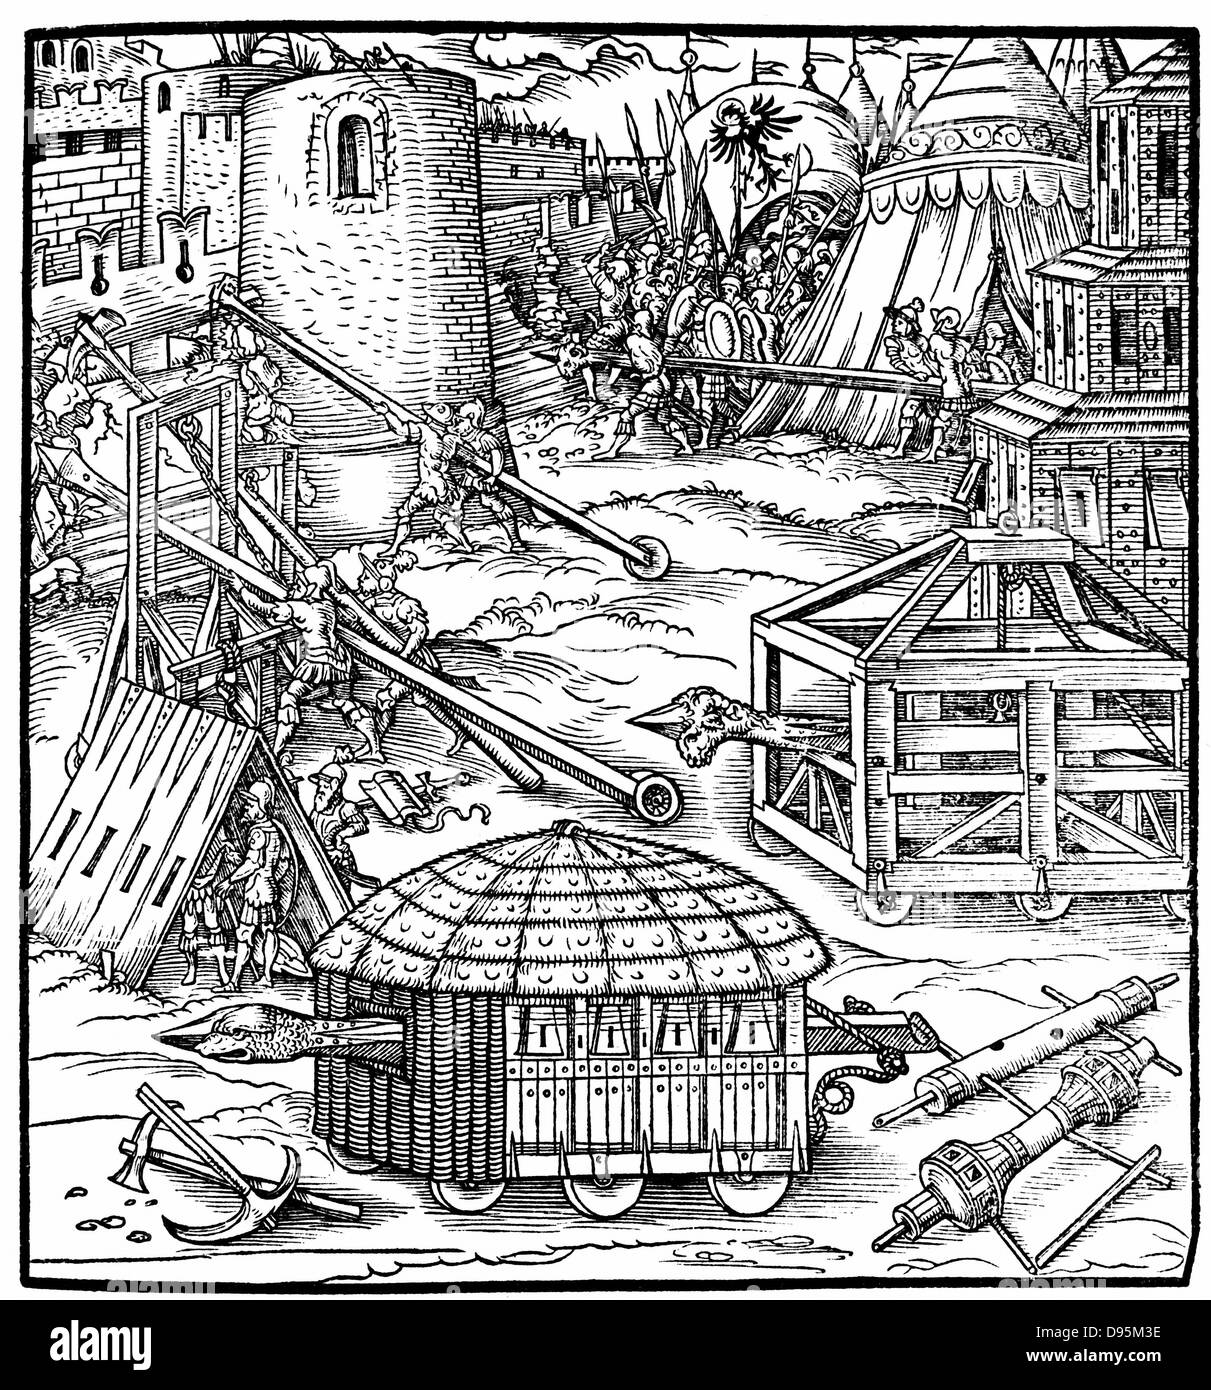 Verschiedene Formen von Belagerungswaffen, einschließlich sturmböcke. Holzschnitt aus Gaultherius Rivius'Architectur... Mathematischen... Kunst' 1547. Stockfoto